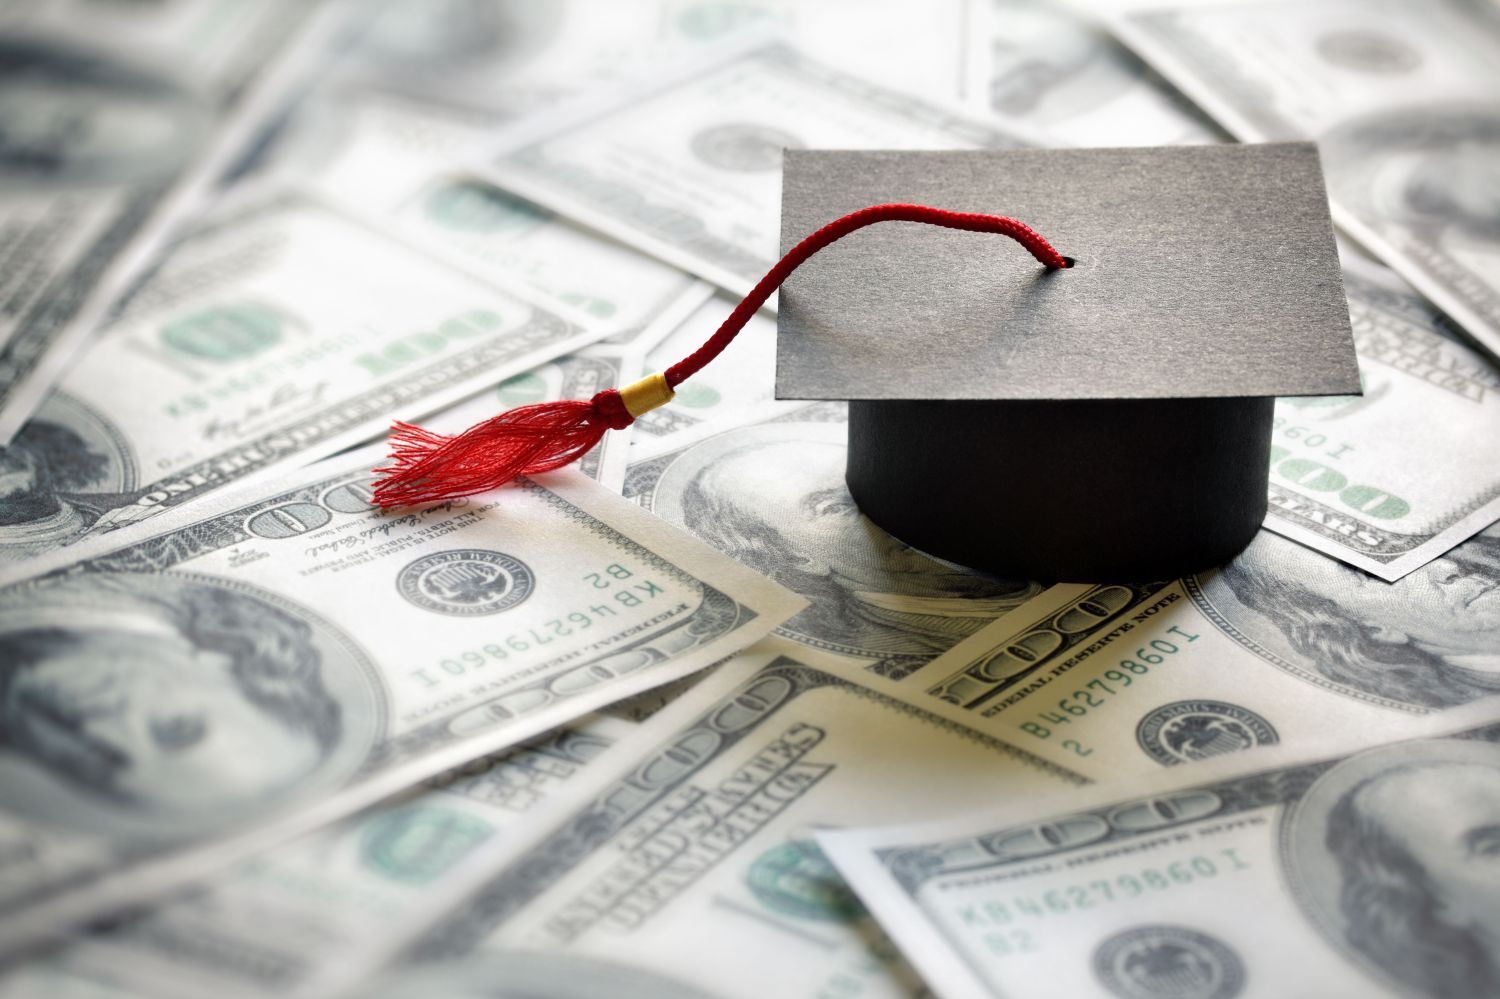 Graduation cap on $100 bills, representing student debt